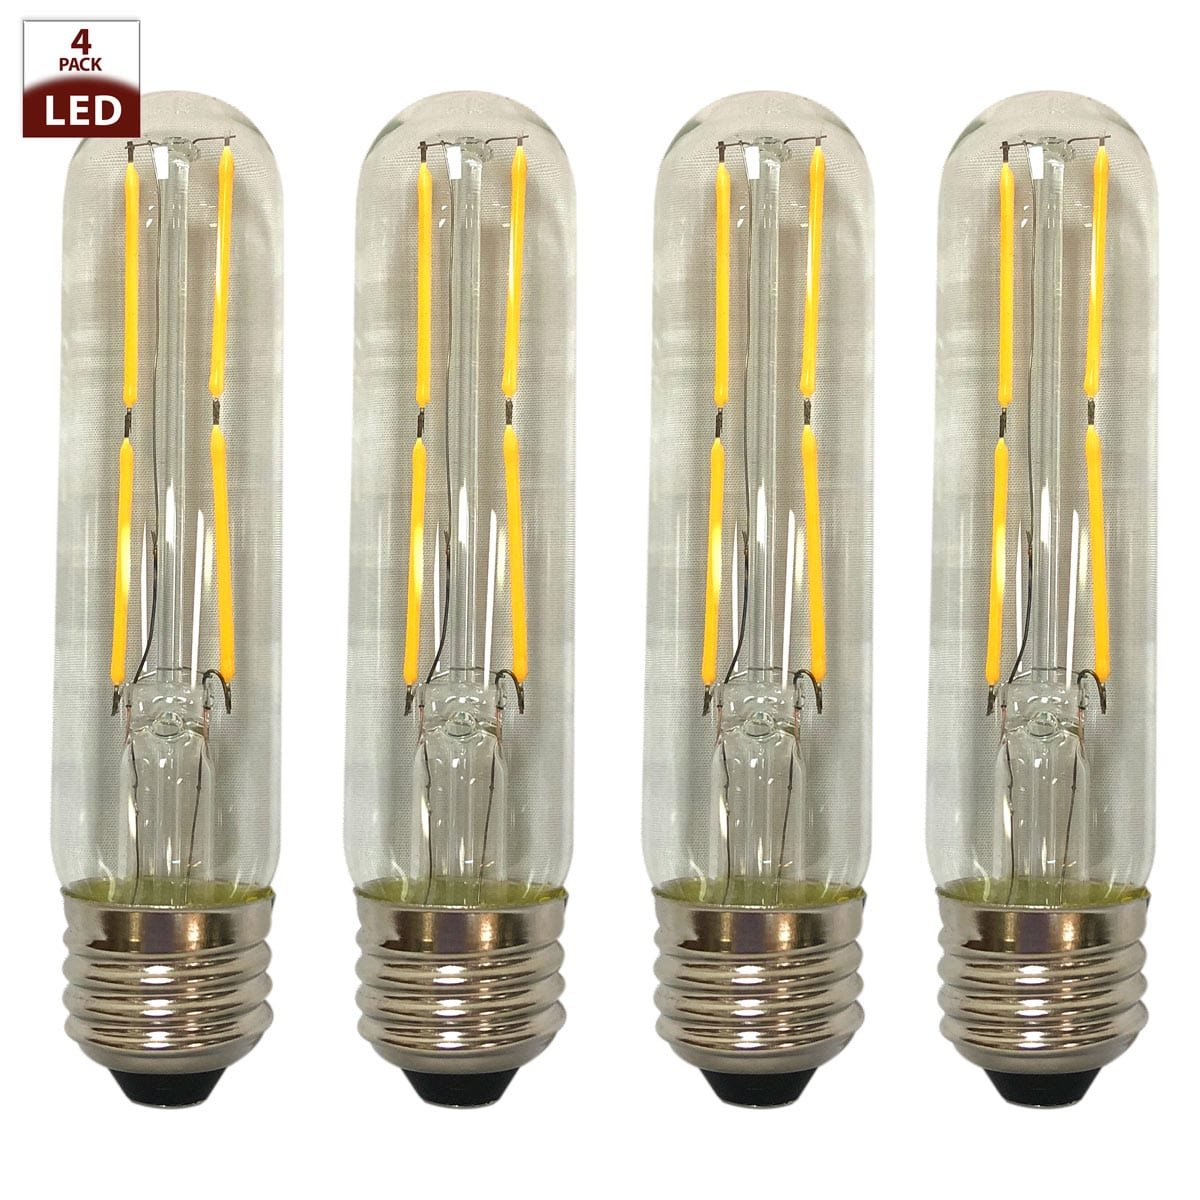 Dimmable Led Light Bulbs